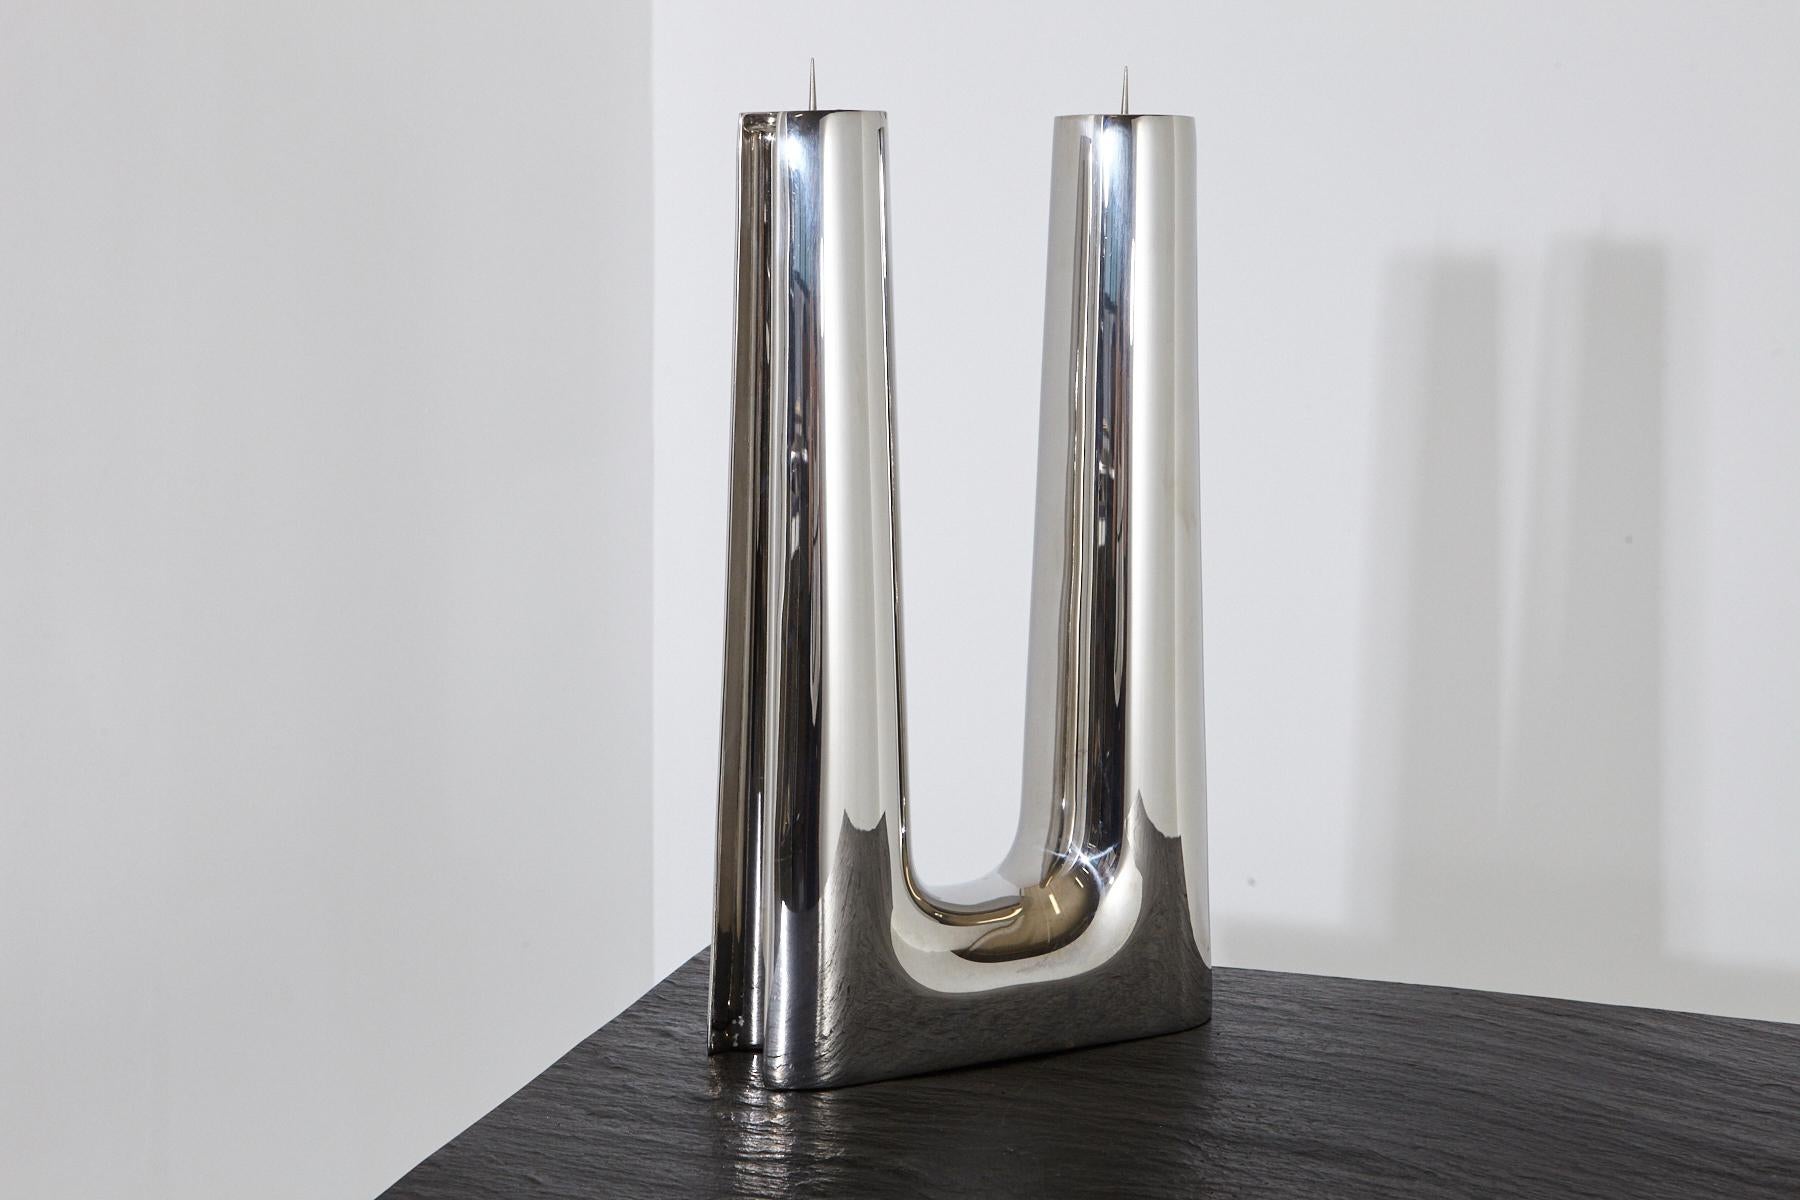 Un bougeoir moderne, simple et minimaliste en acier inoxydable poli de Georg Jensen pour deux bougies. 
Le bougeoir présente quelques rayures mineures sur la surface, dues à l'utilisation.